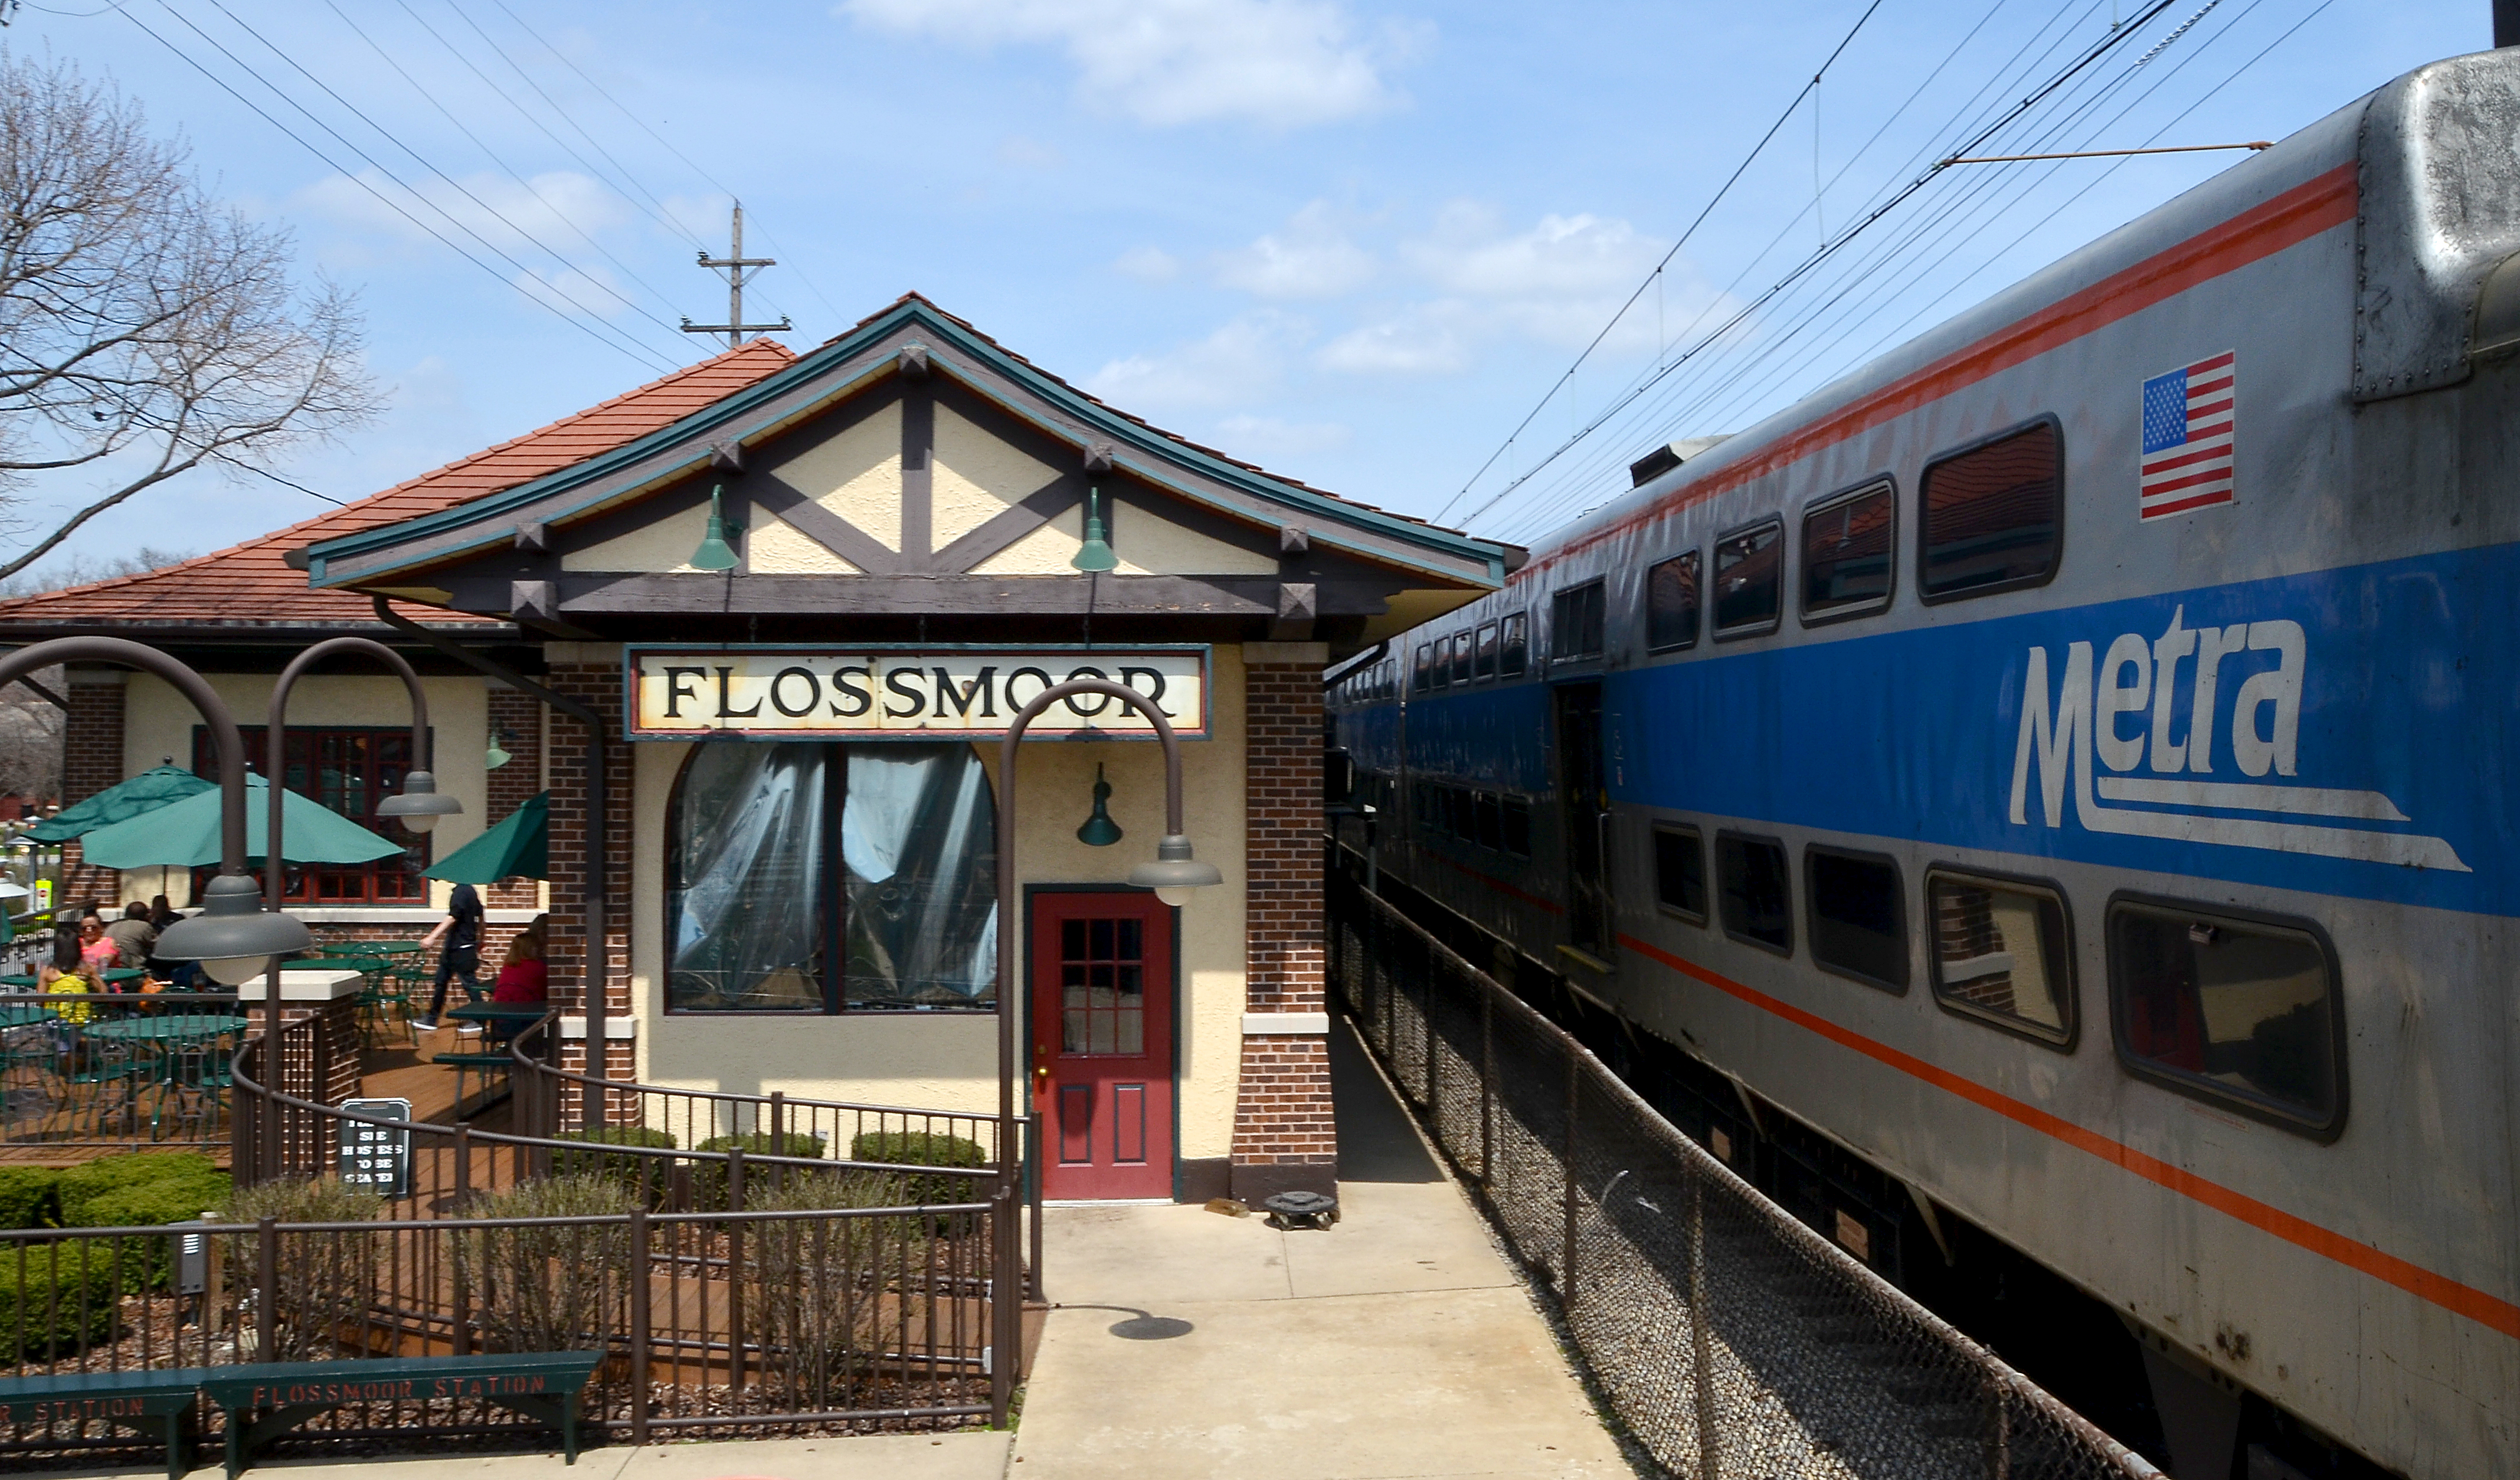 Flossmoor Station Restaurant & Brewery, Flossmoor